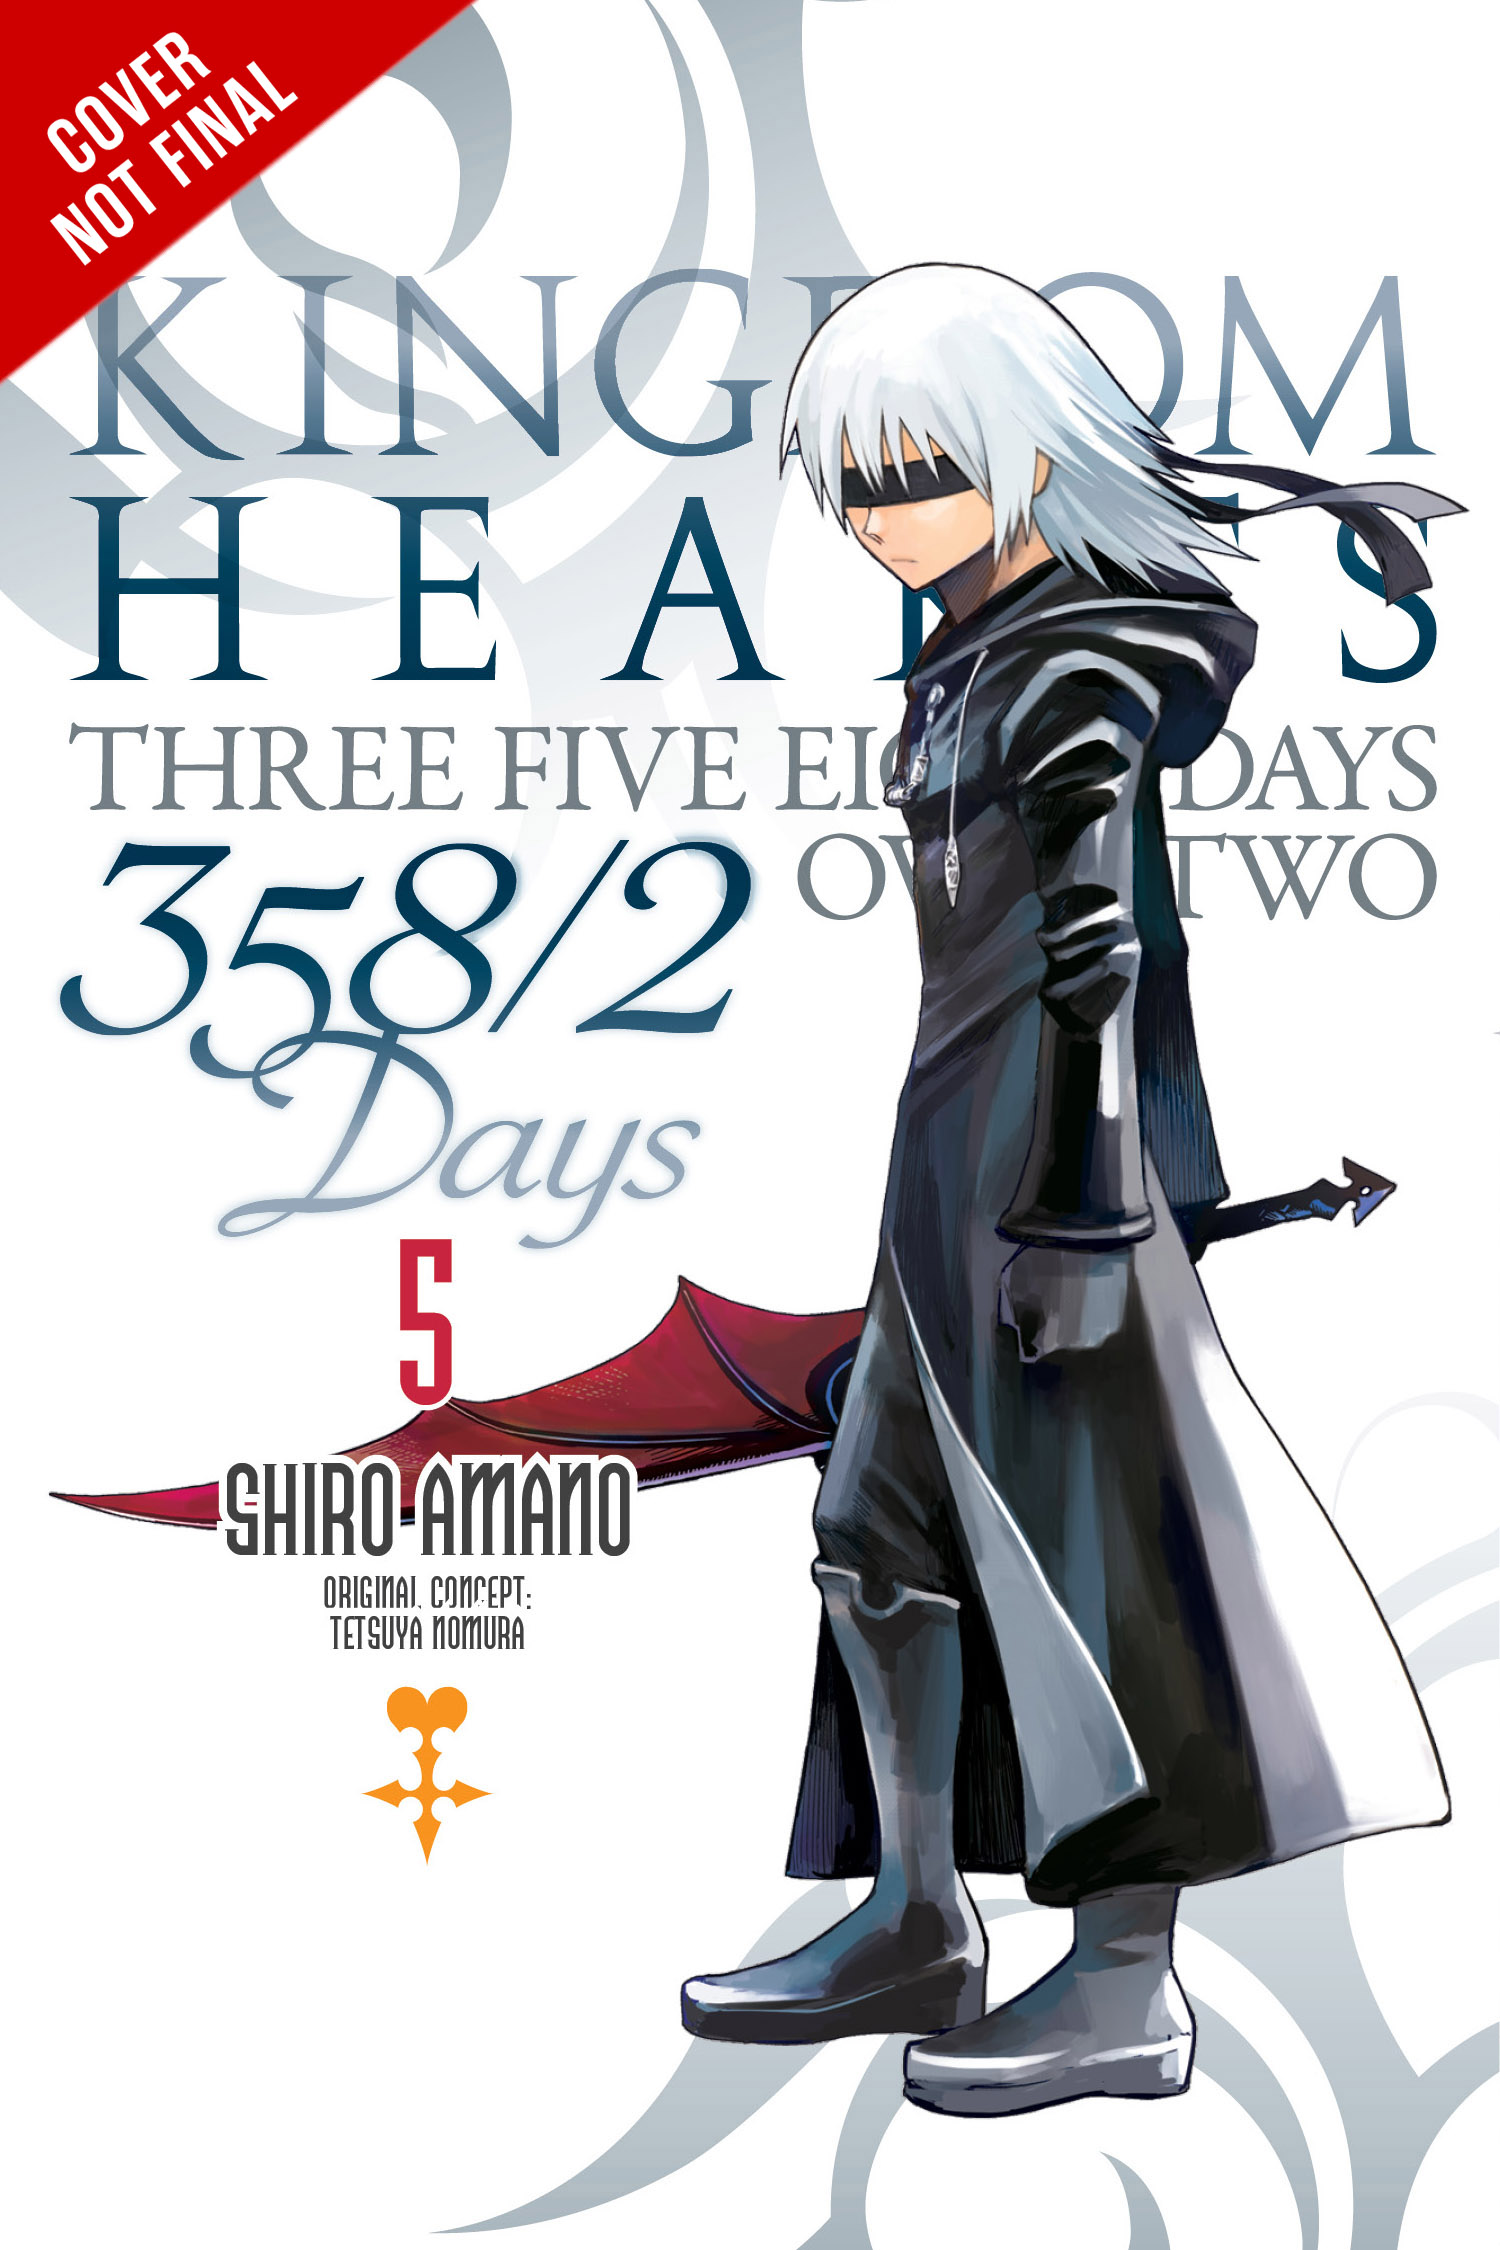 Kingdom Hearts 358/2 Days Vol. 4-5 & Kingdom Hearts II Vol. 3 Manga Release Dates! - News ...